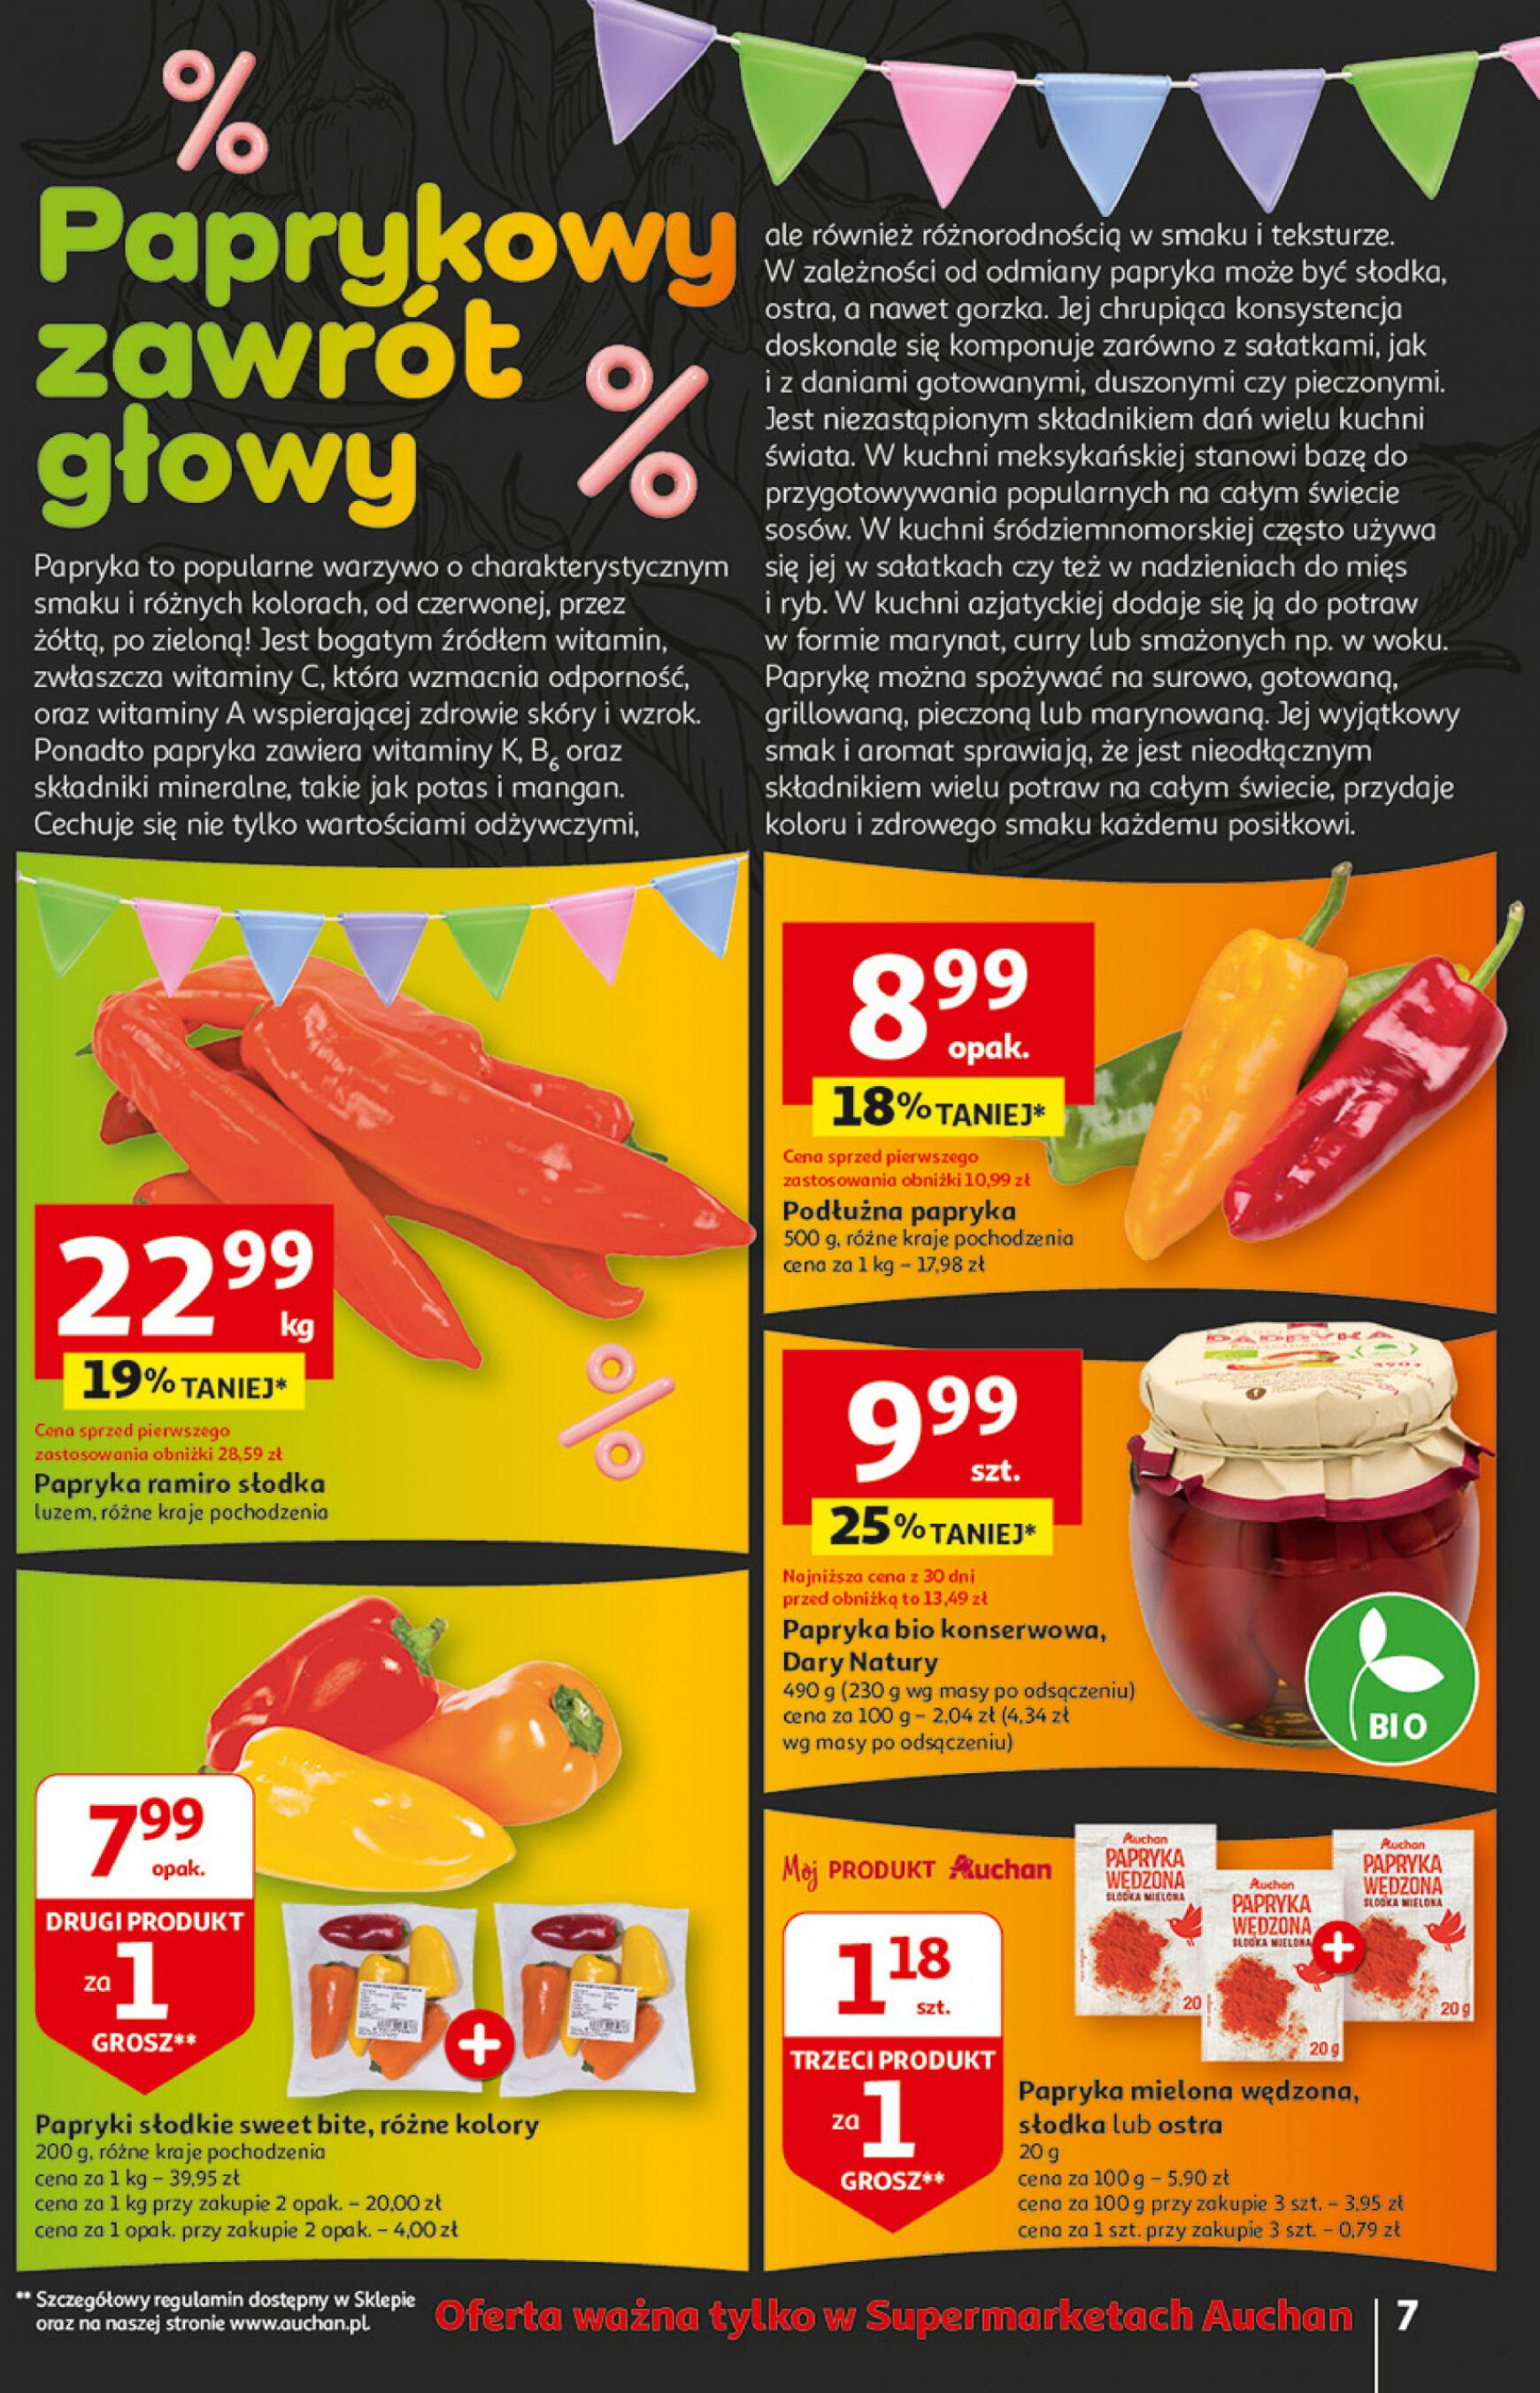 auchan - Supermarket Auchan - Gazetka Jeszcze taniej na urodziny gazetka aktualna ważna od 02.05. - 08.05. - page: 7